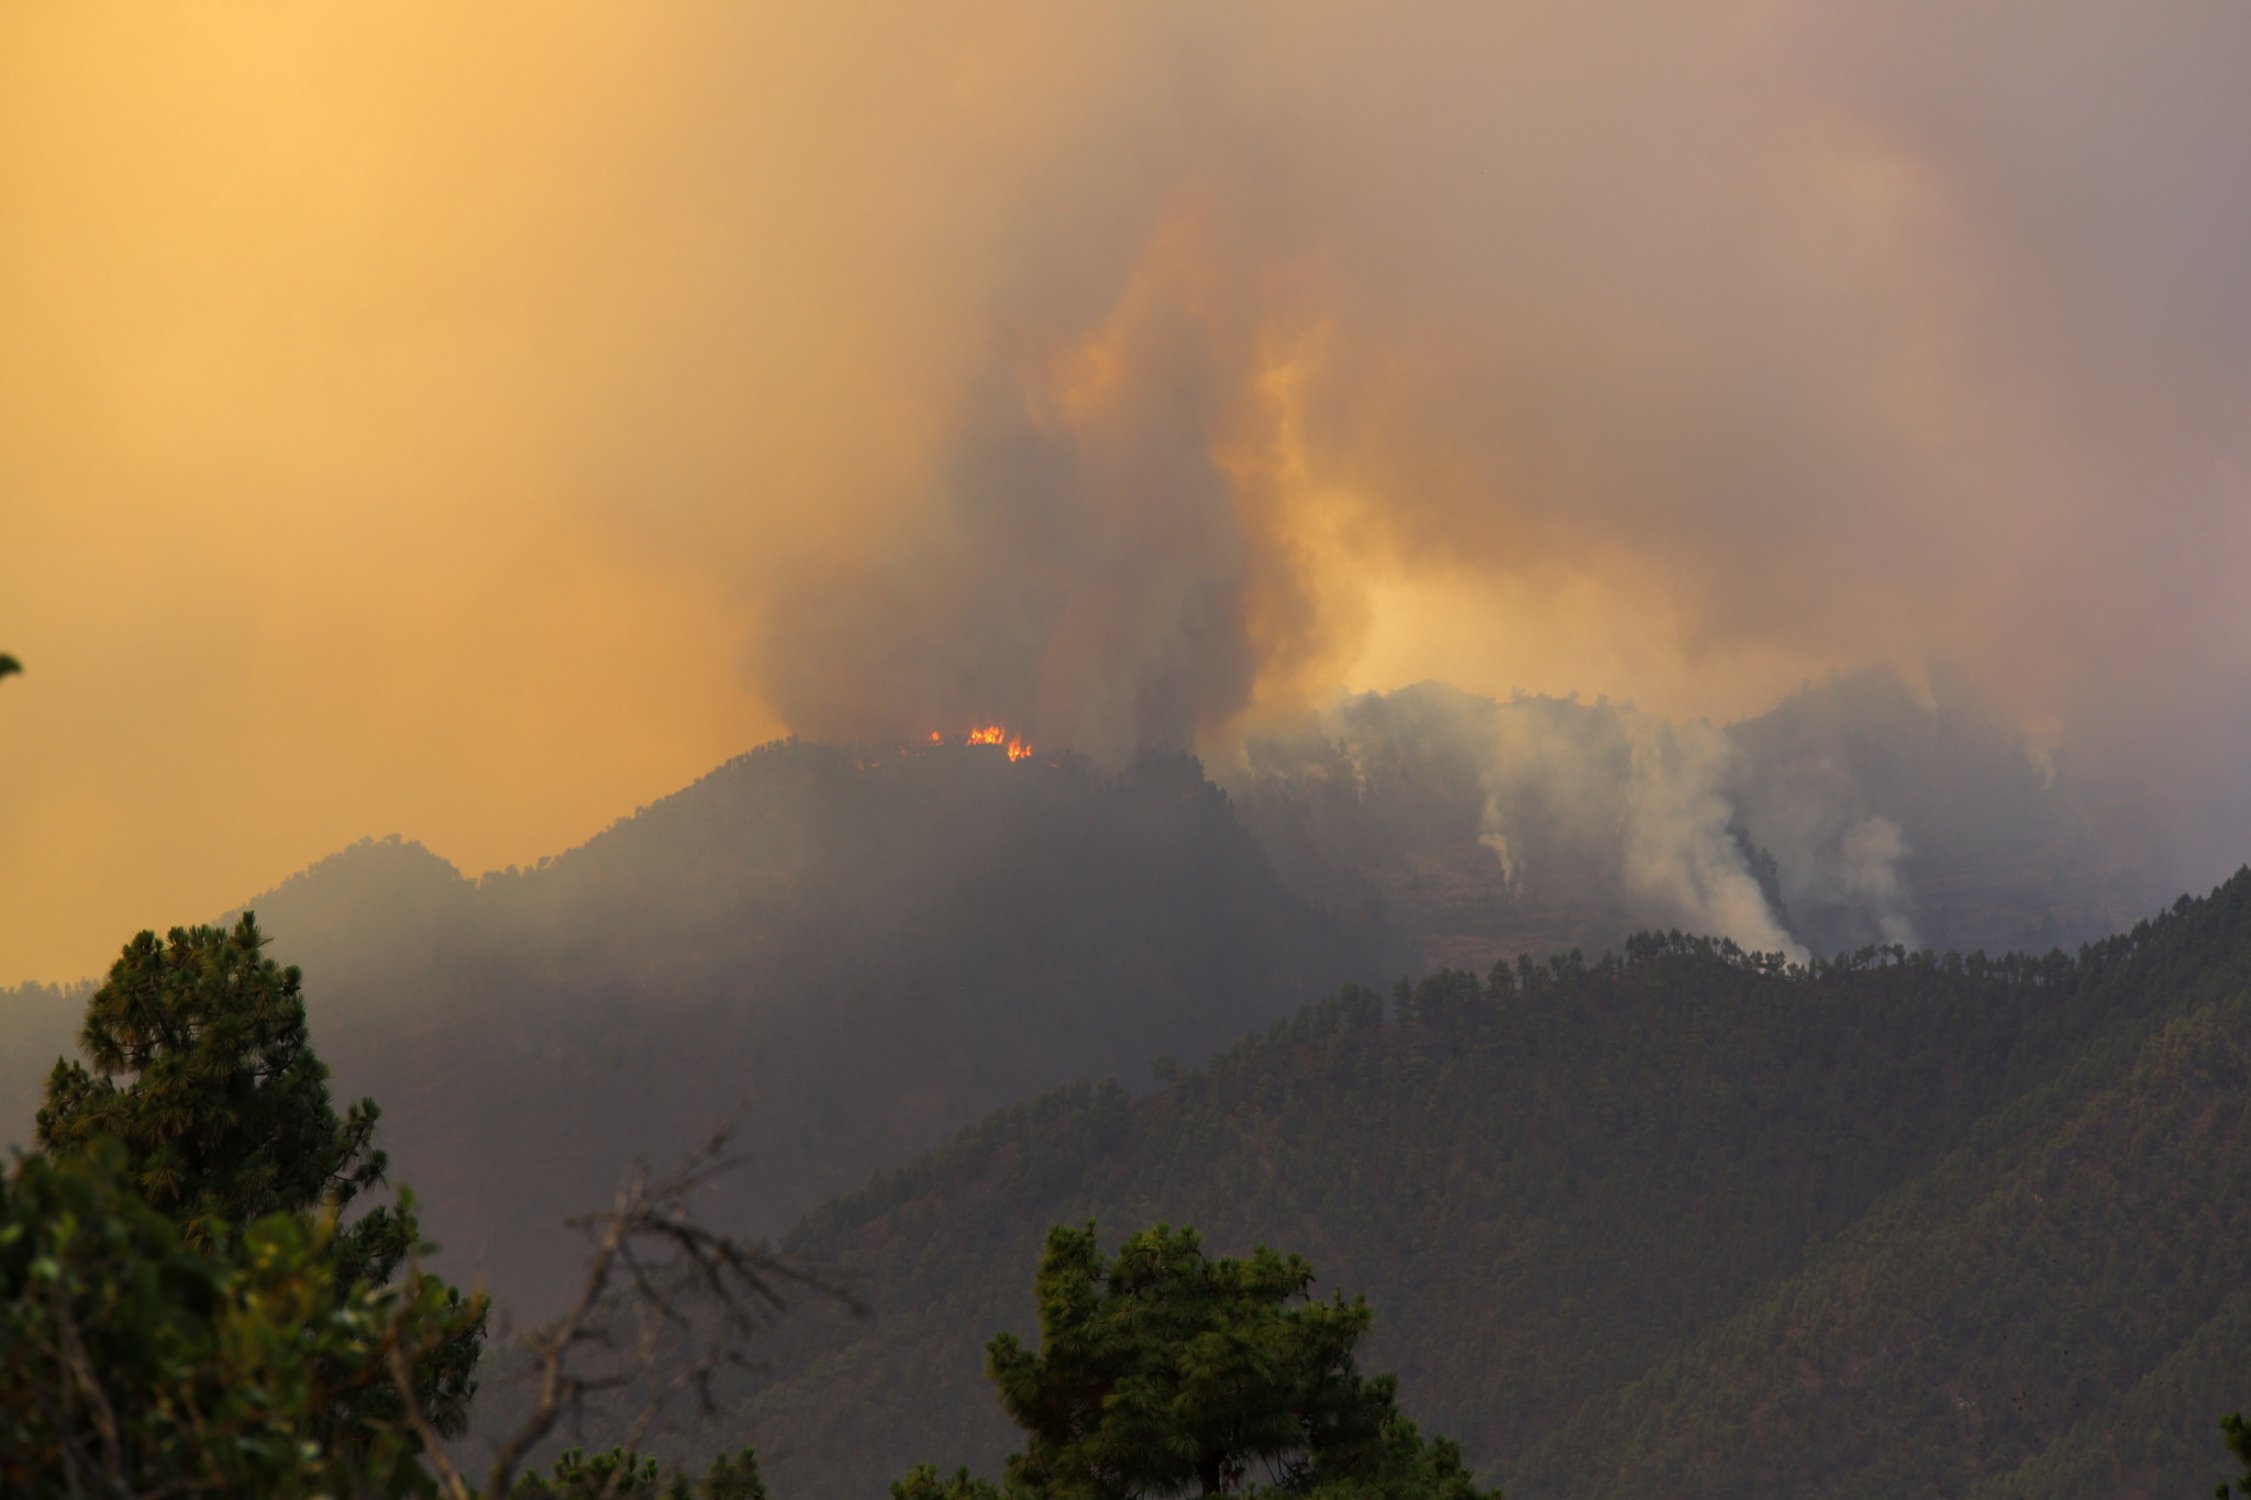 Incendio en La Palma: el fuego sin control quema 13 casas y obliga a desalojar a más de 4.000 personas